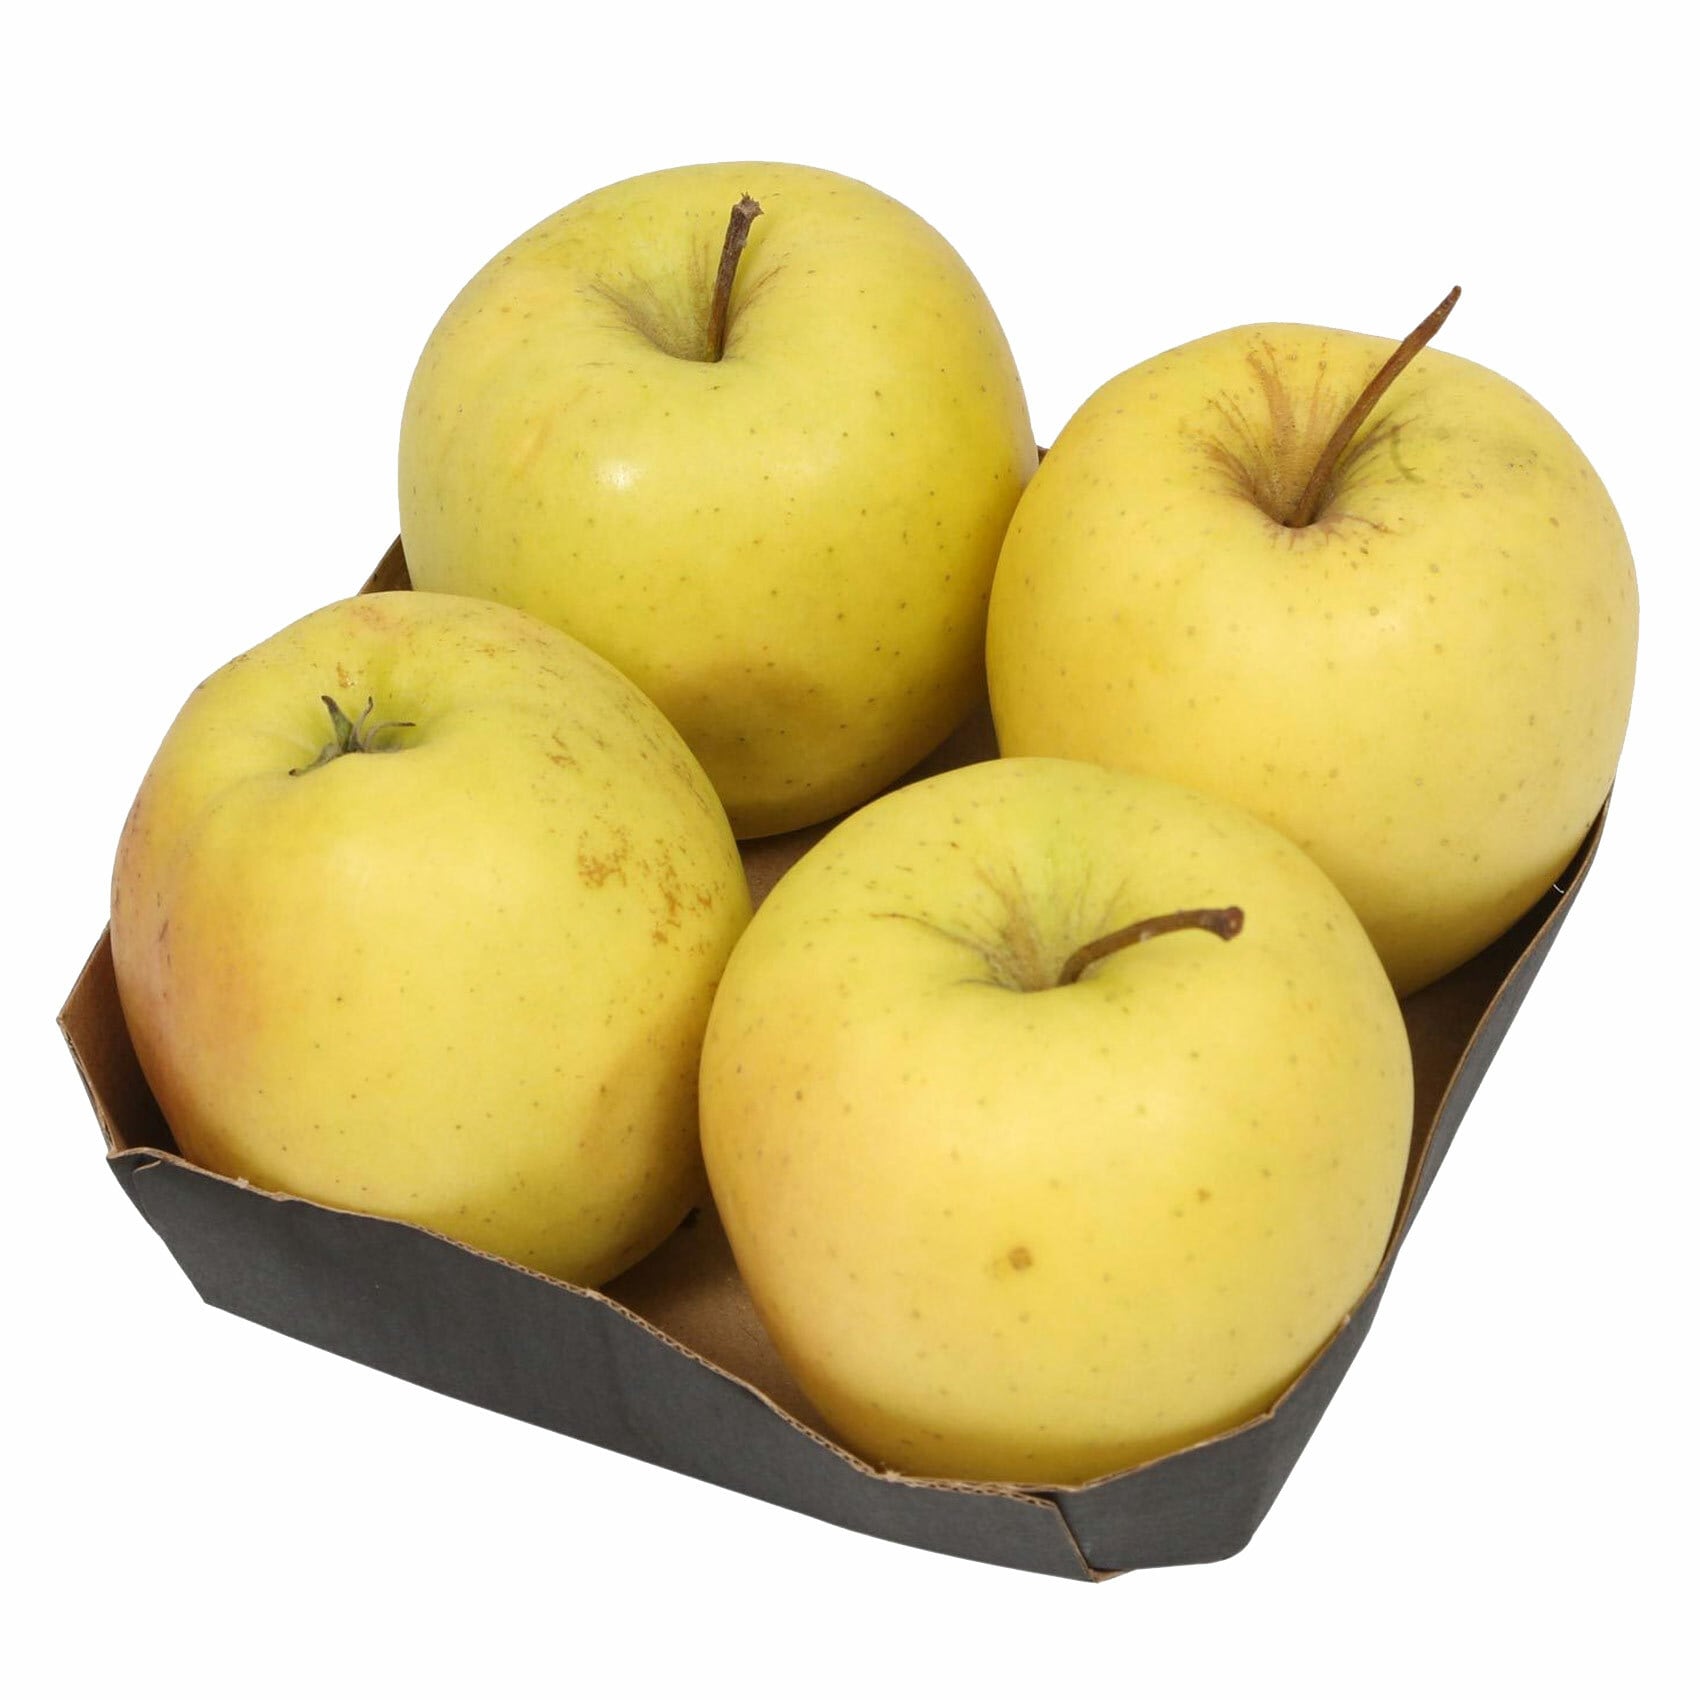 Buy Golden Apples Online Shop Fresh Food On Carrefour Uae